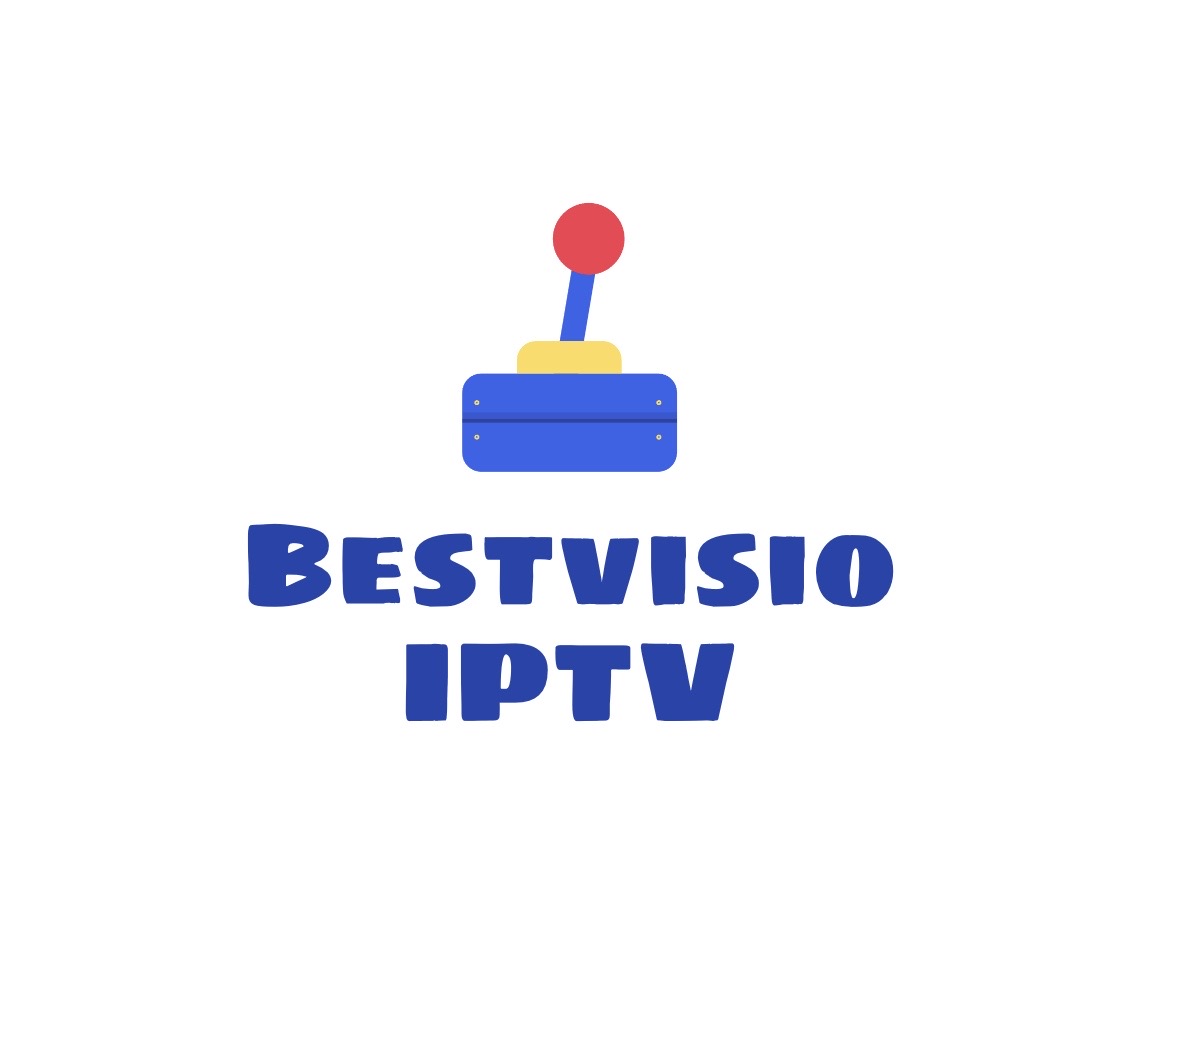 BESTVSION IPTV